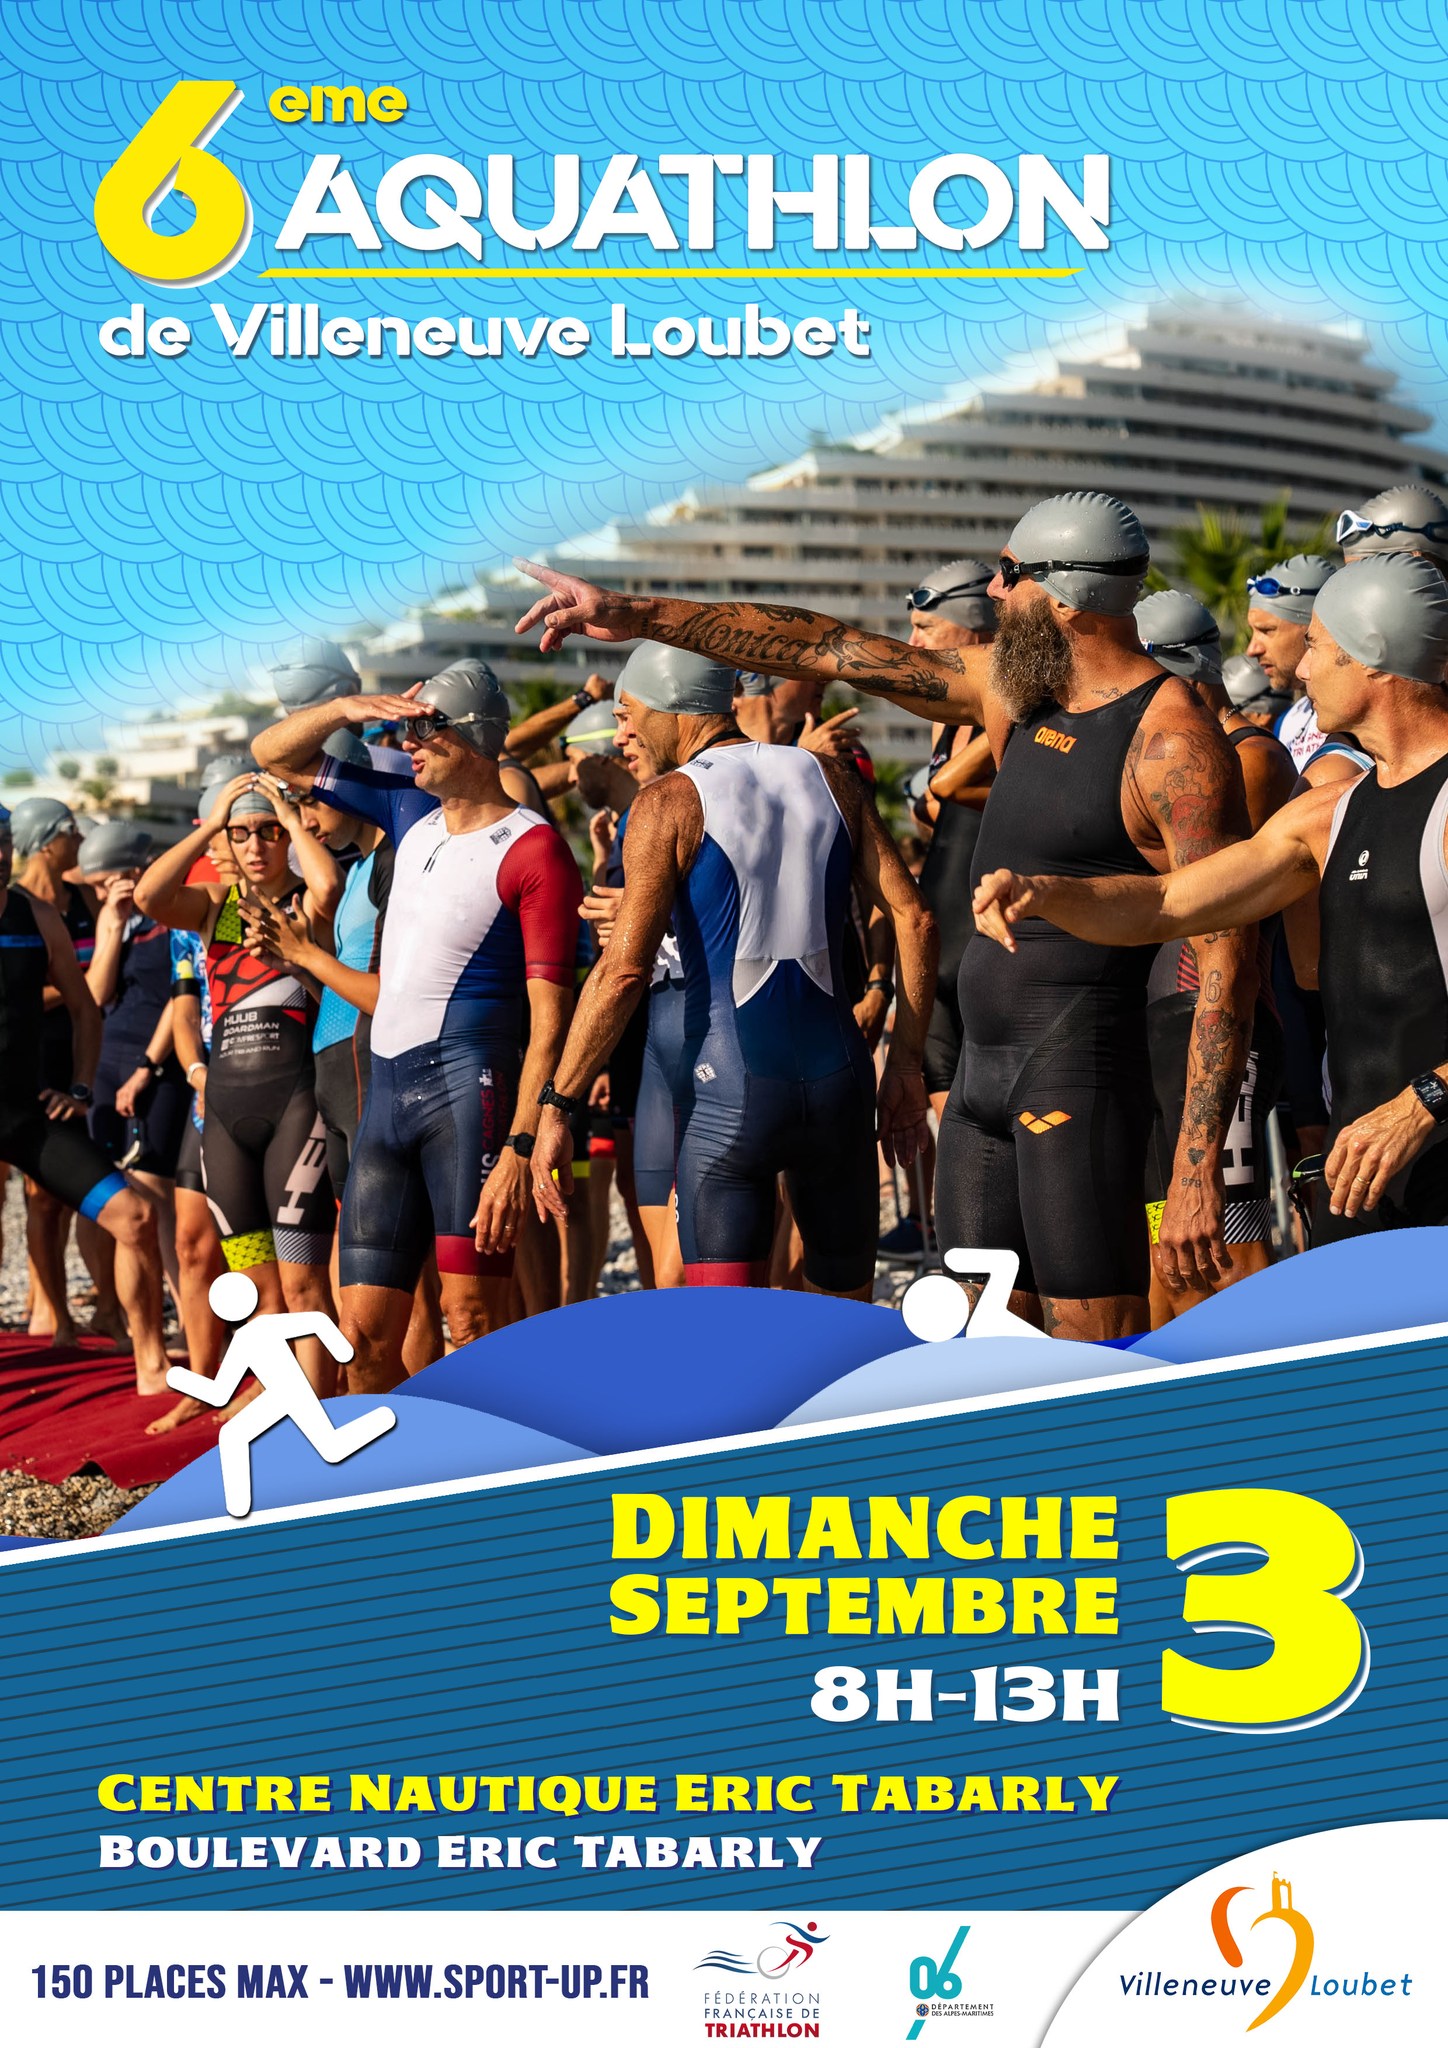 6 aquathlon de Villeneuve Loubet